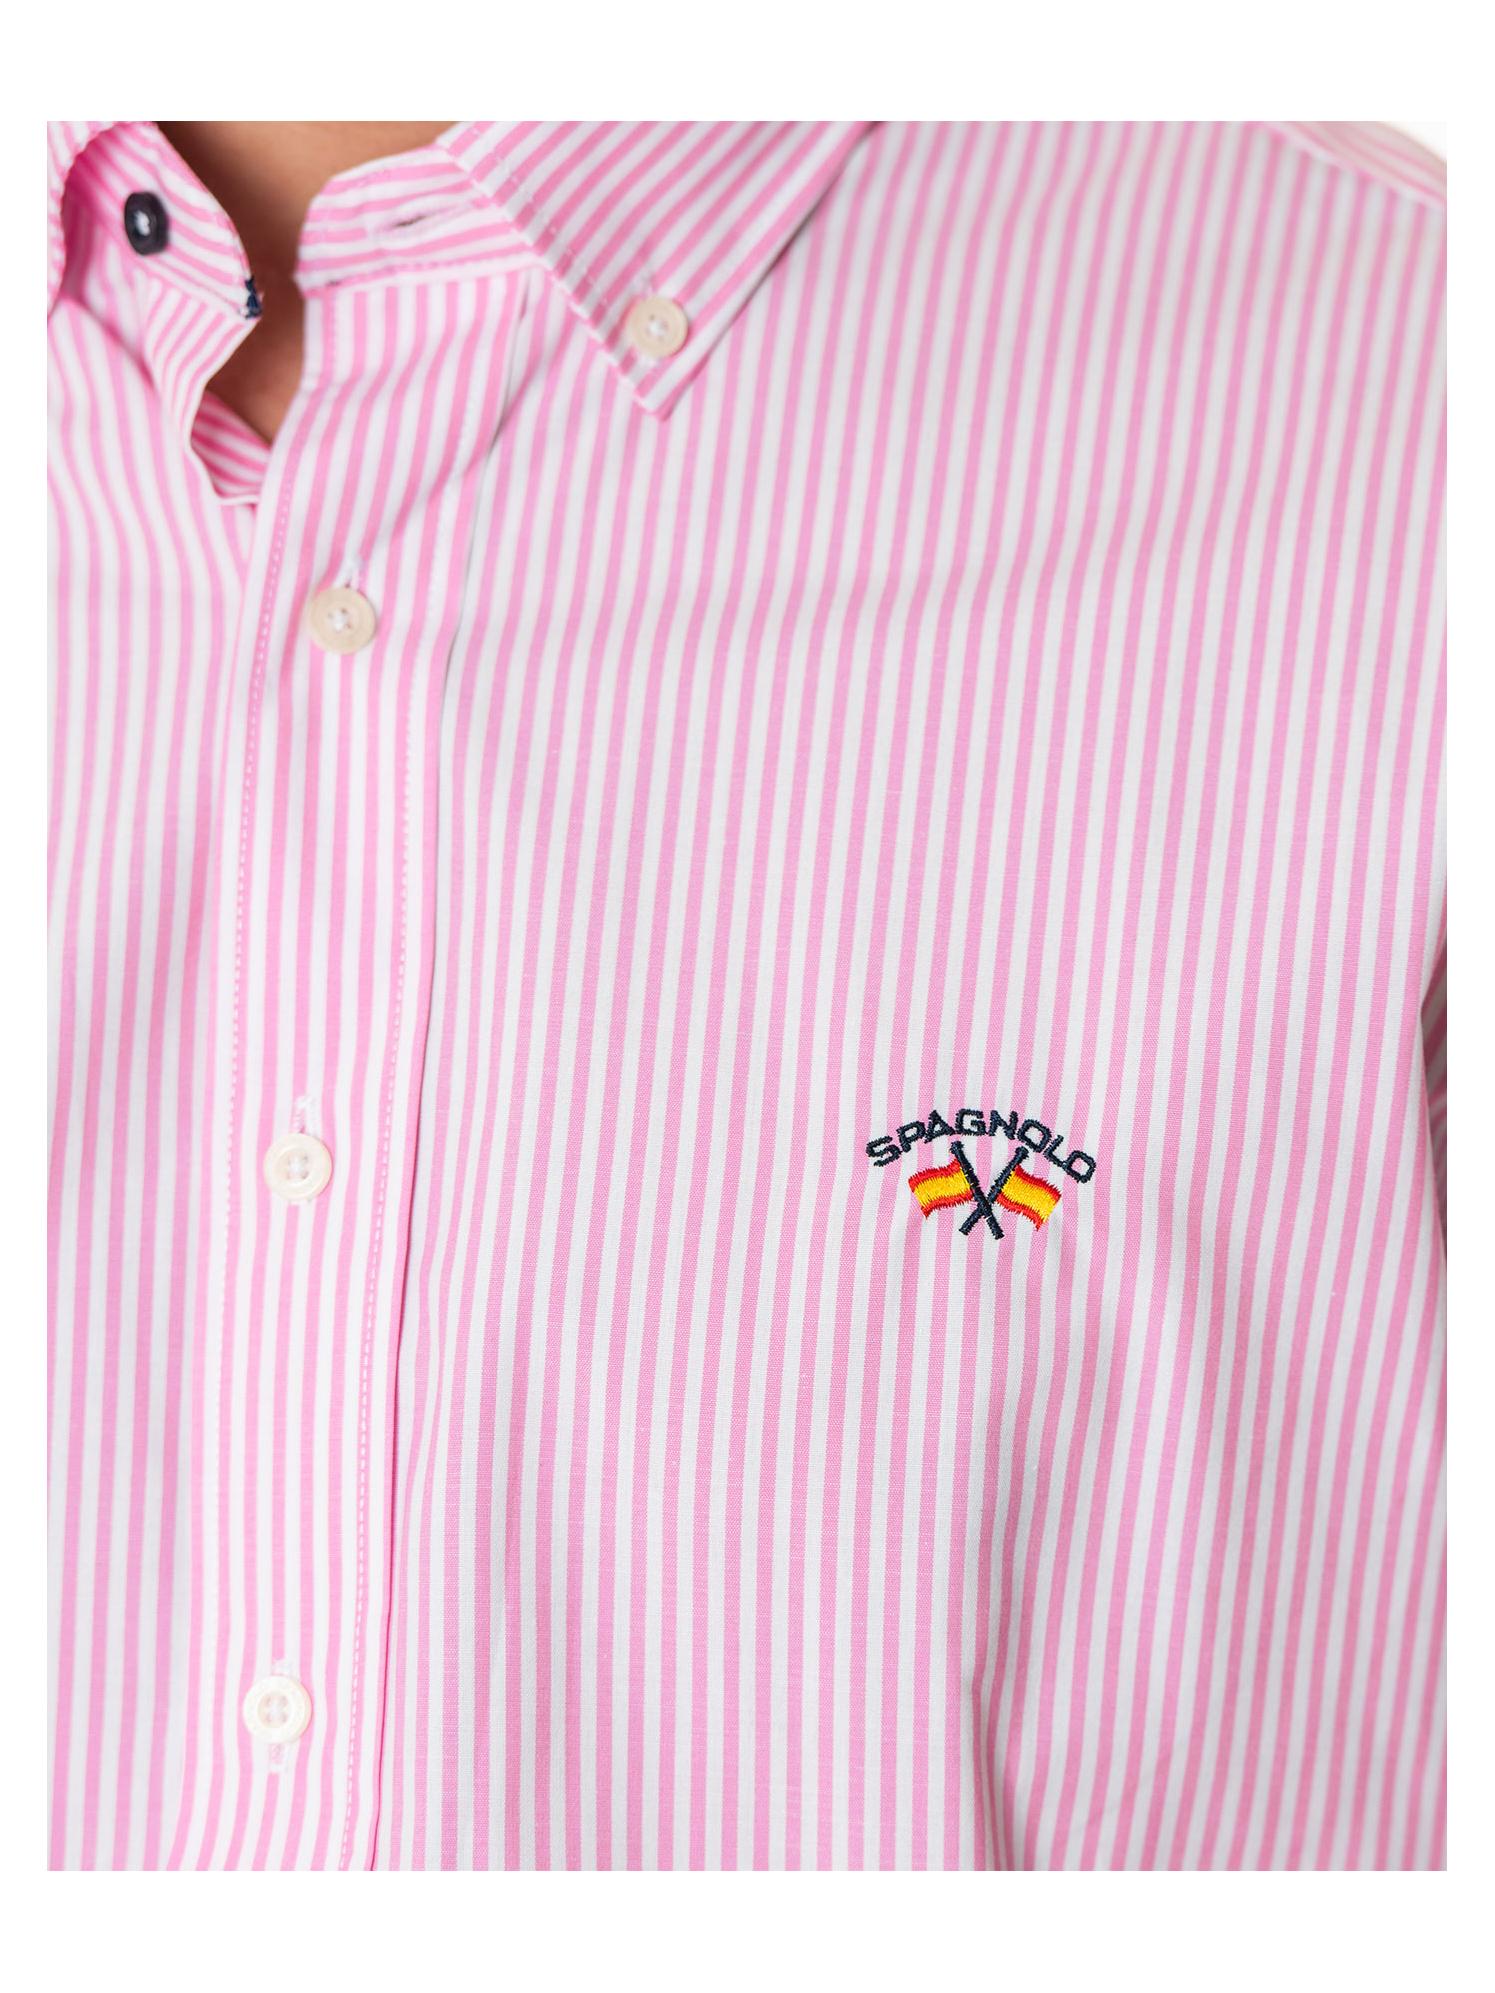 Camisa rayas «Spagnolo» – Serrano